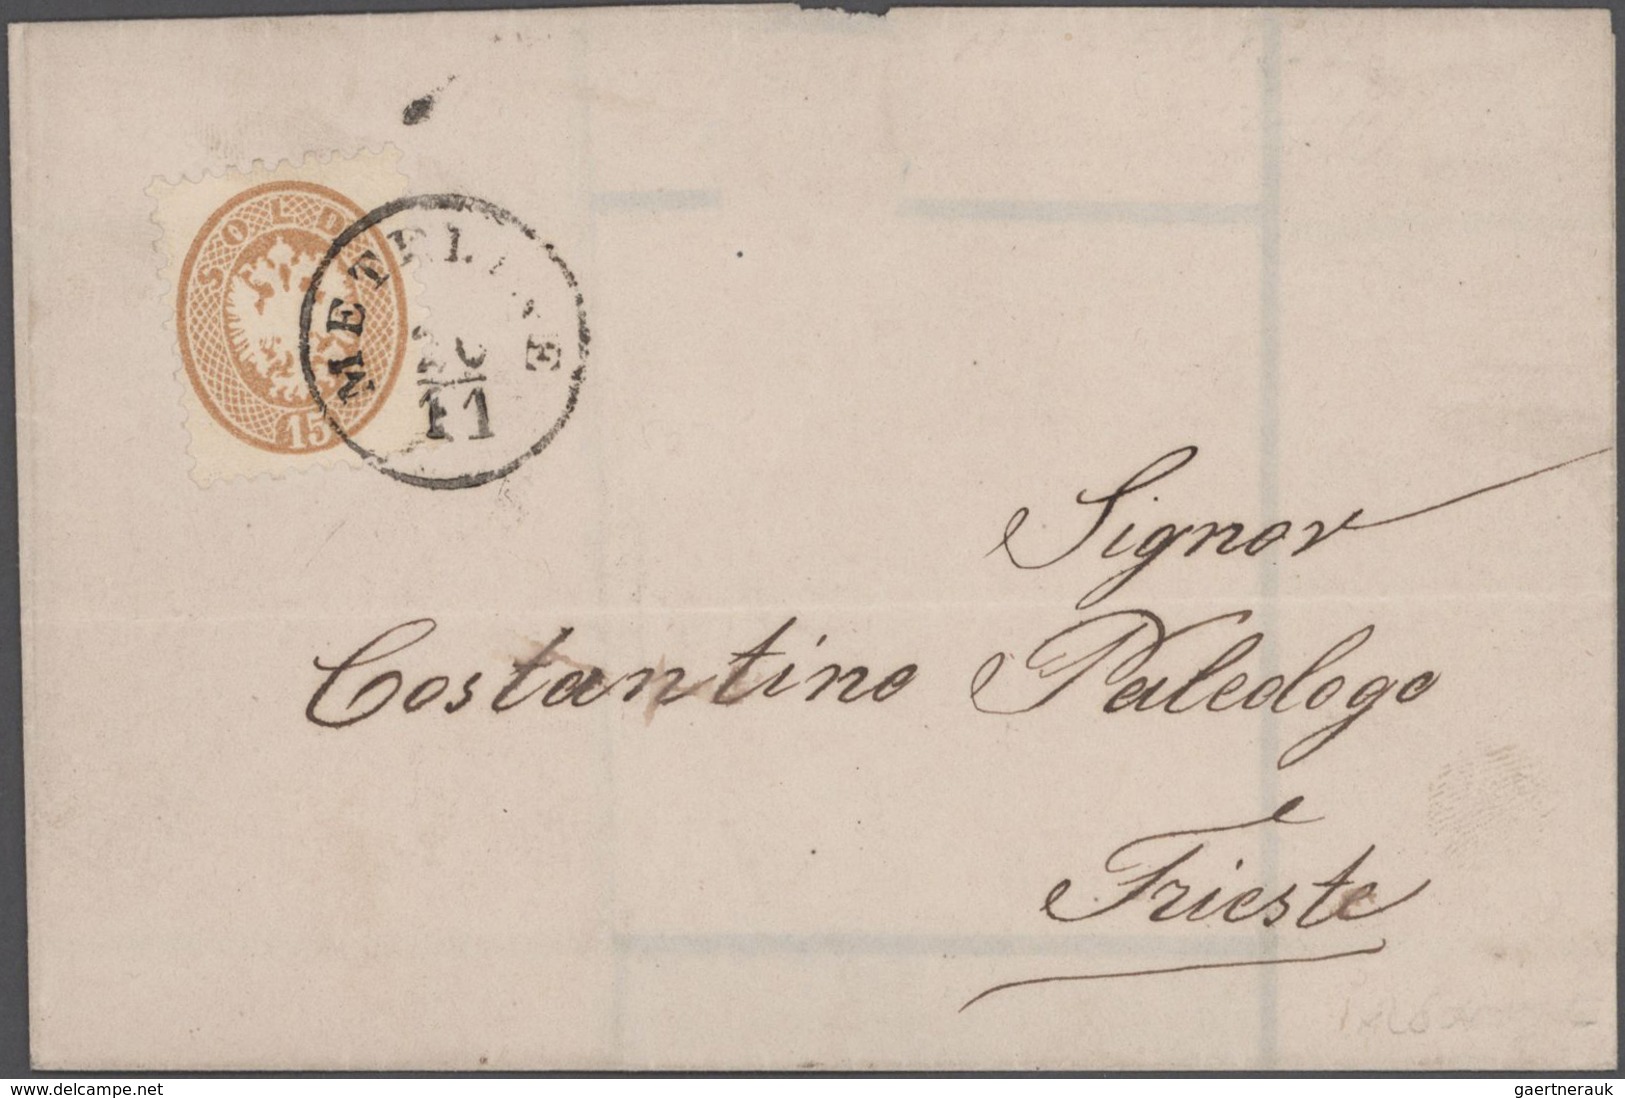 Österreichische Post in der Levante: 1838/1912 ca., gehaltvoller Sammlungsbestand mit ca. 40 Belegen